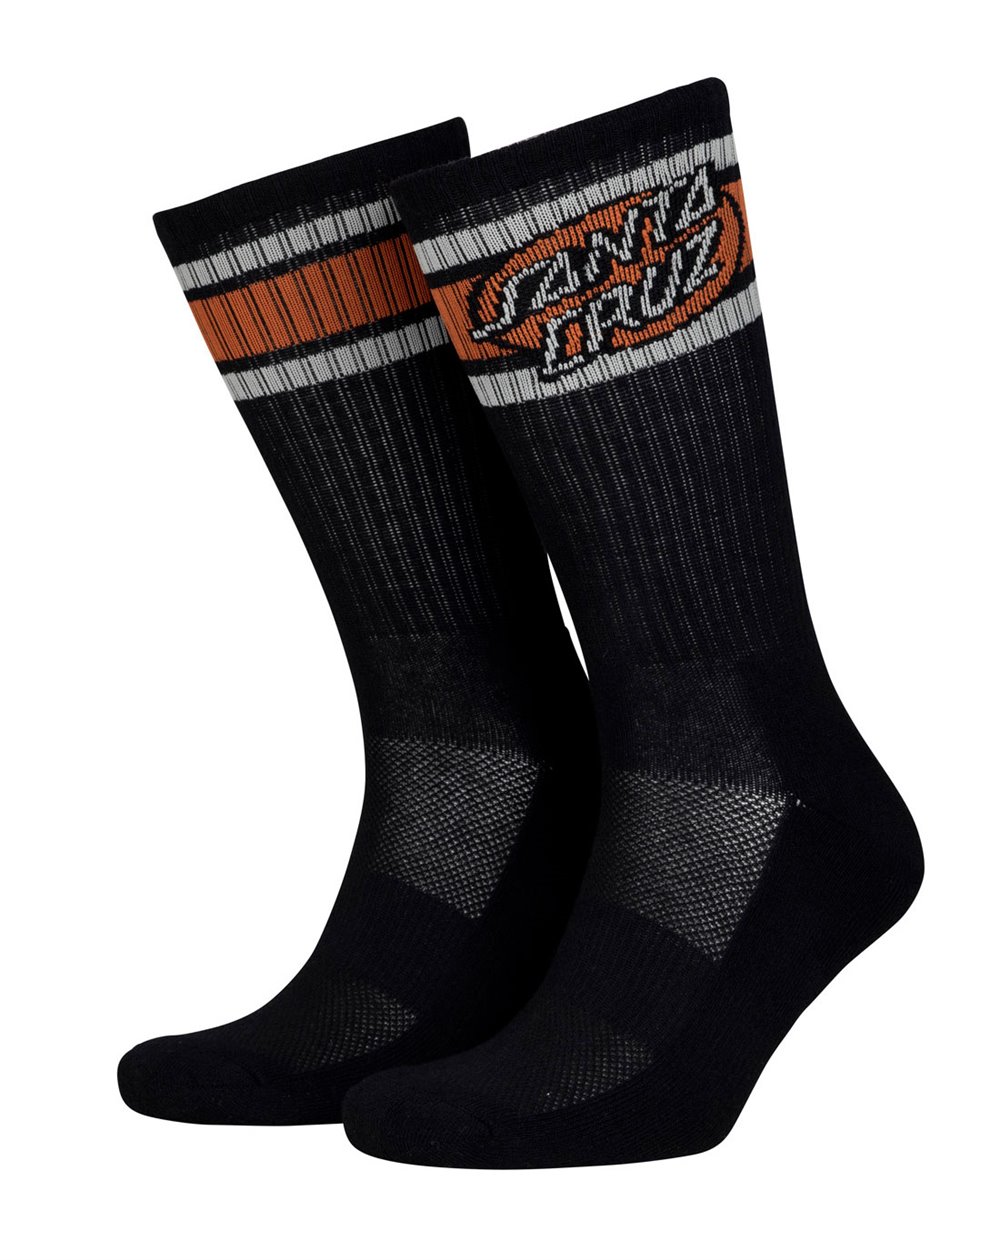 Santa Cruz Men's Skate Socks Oval Dot Stripe (Black)